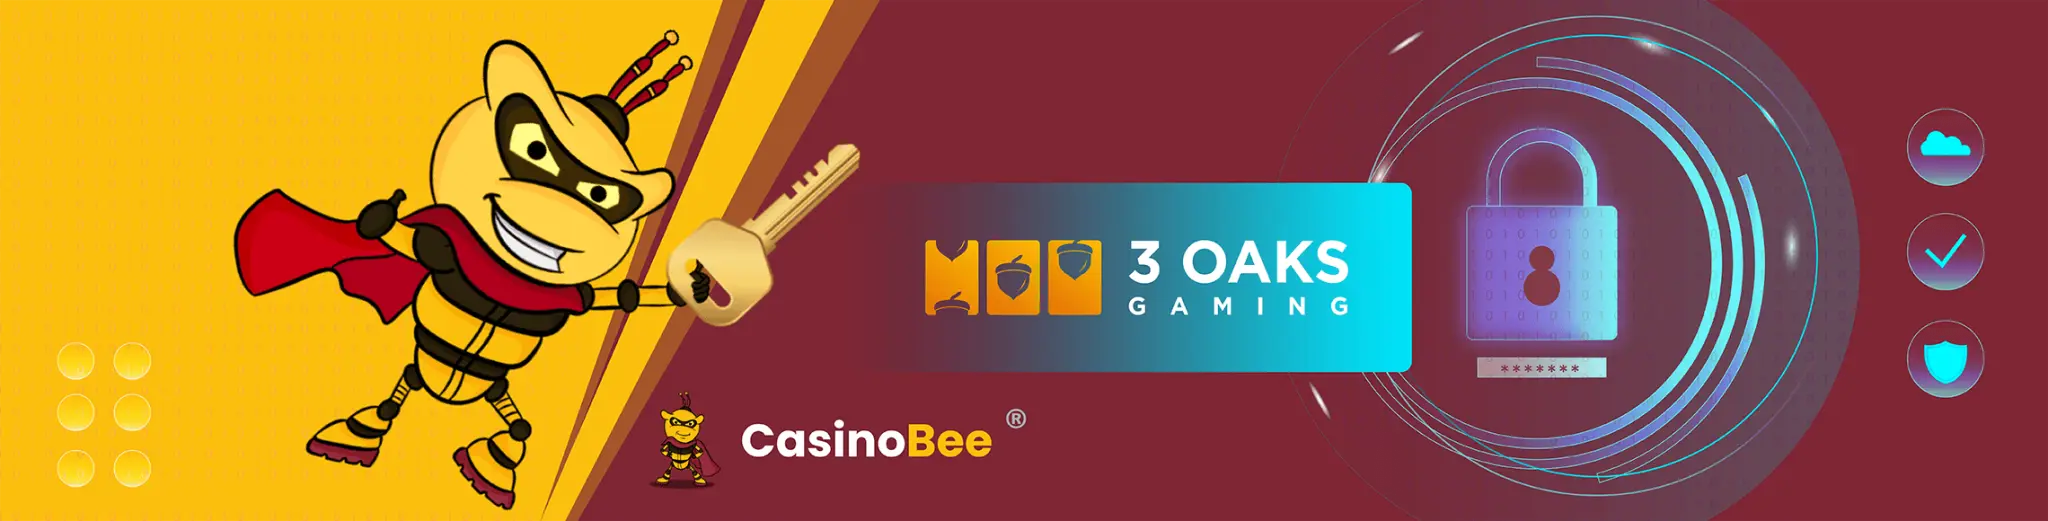 3 Oaks Gaming Casino lar deg spille i trygge og sikre rammer